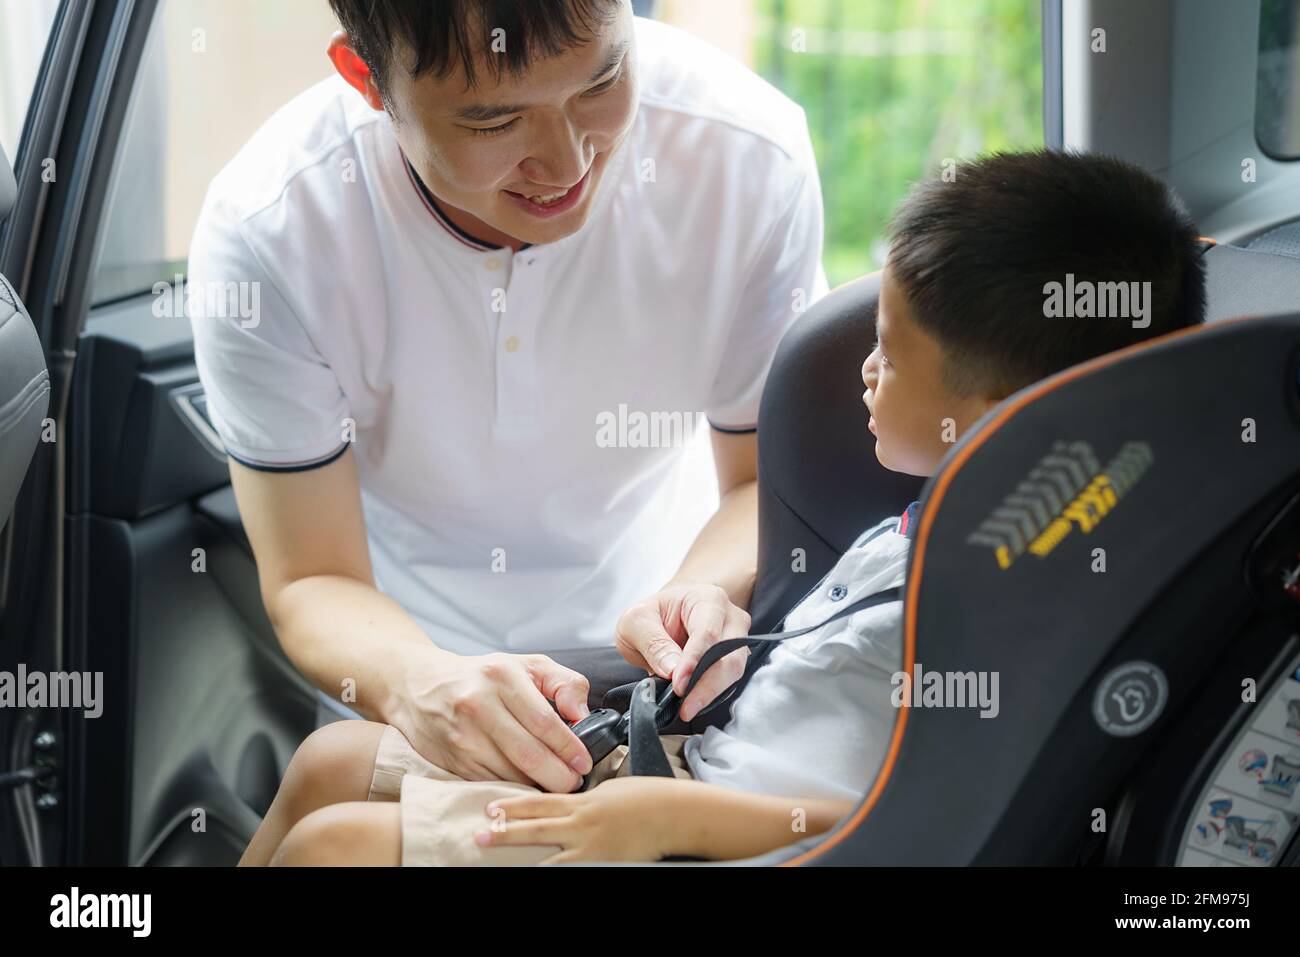 Asiatischer Vater, der während der Reise ein Kind in den Autositz klickt, interagieren Väter den ganzen Tag über mit ihren Kindern. Stockfoto